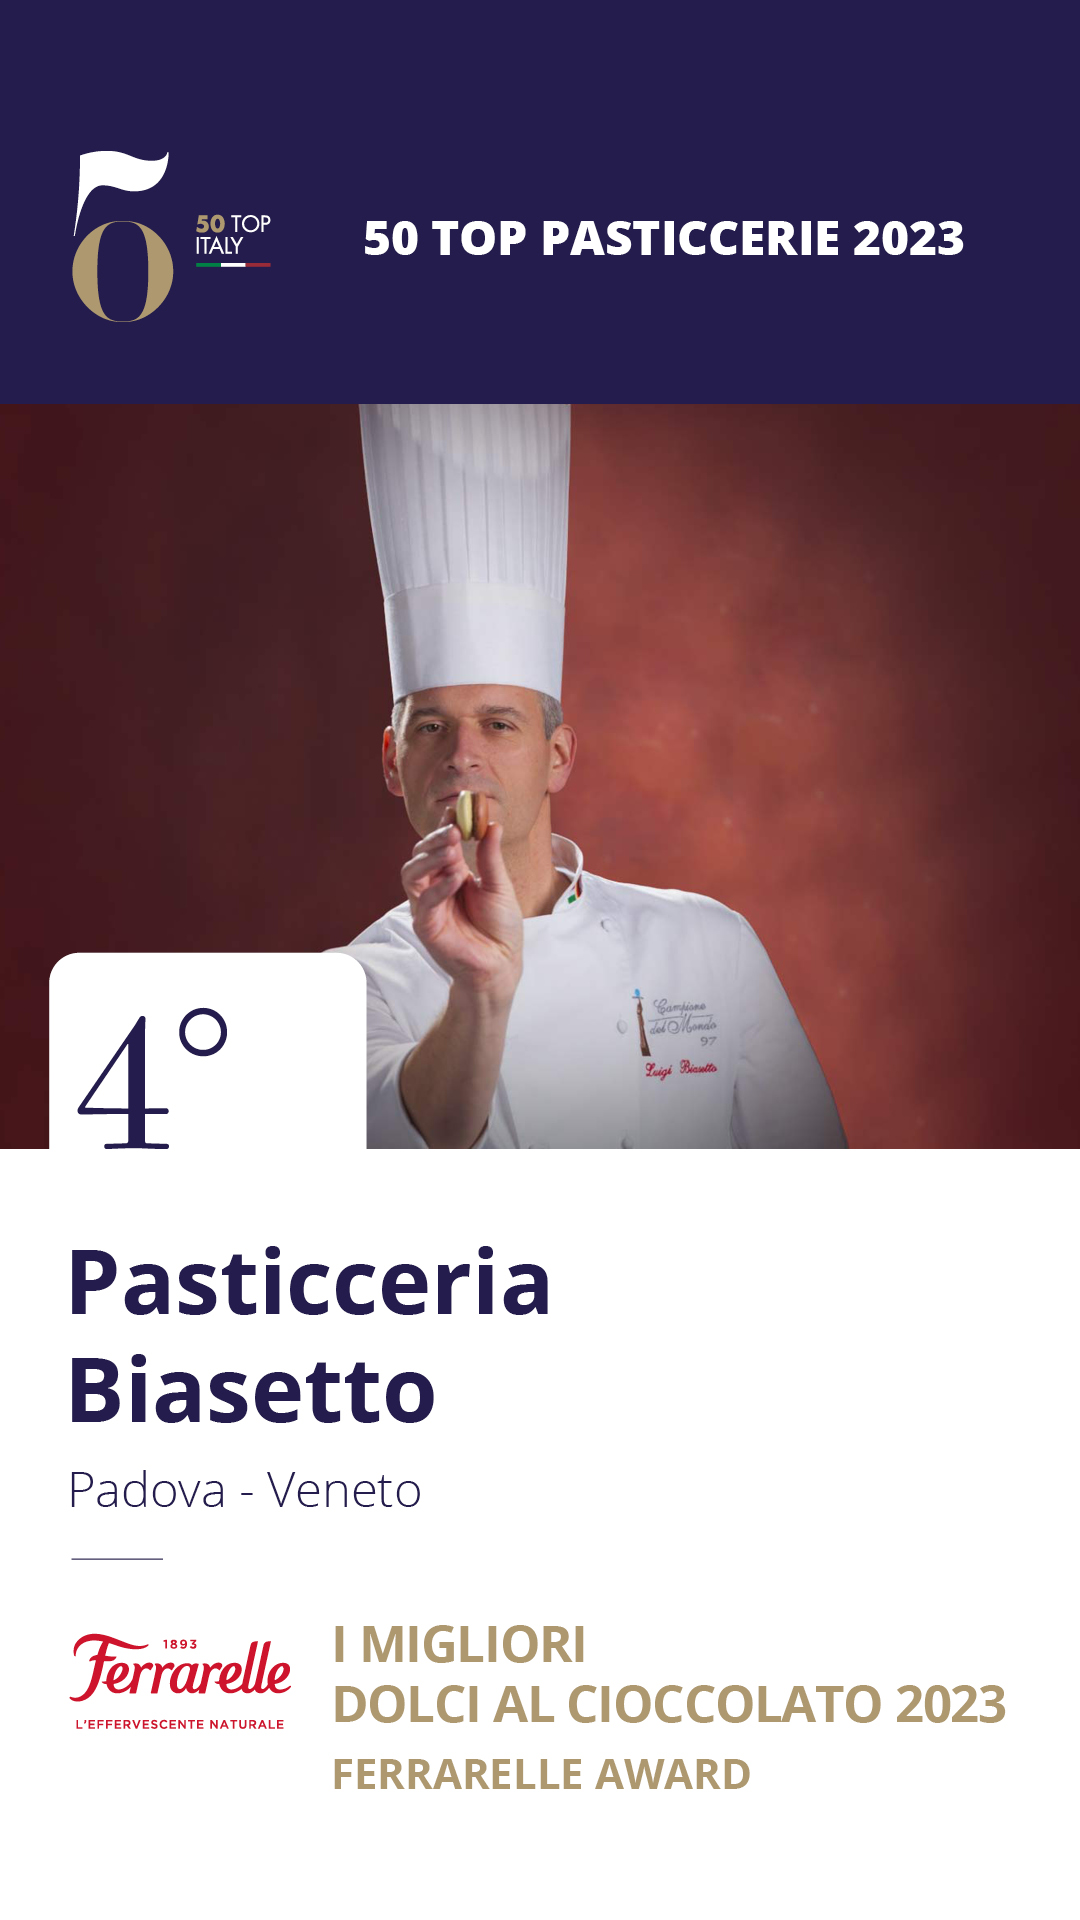 4. Pasticceria Biasetto – Padova, Veneto